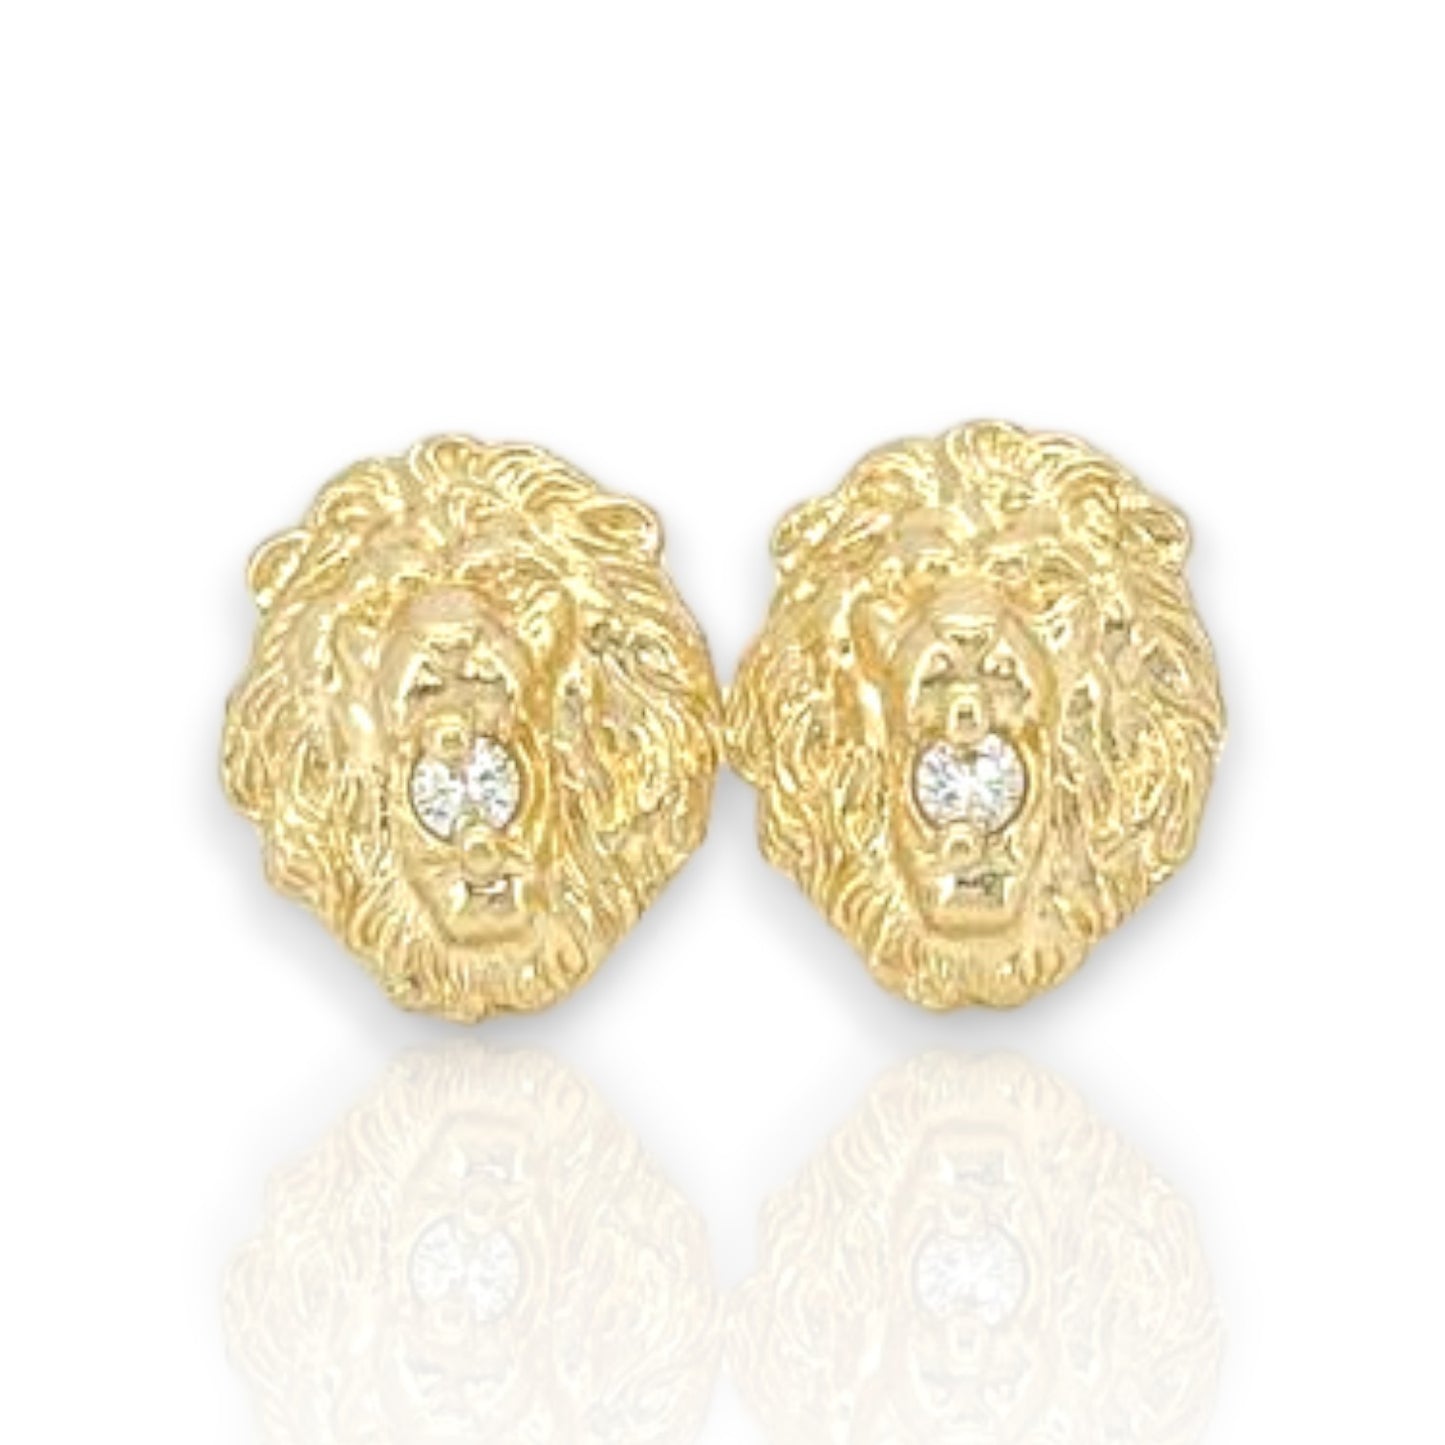 Lion Face Zc Earrings  - 10k Yellow Gold